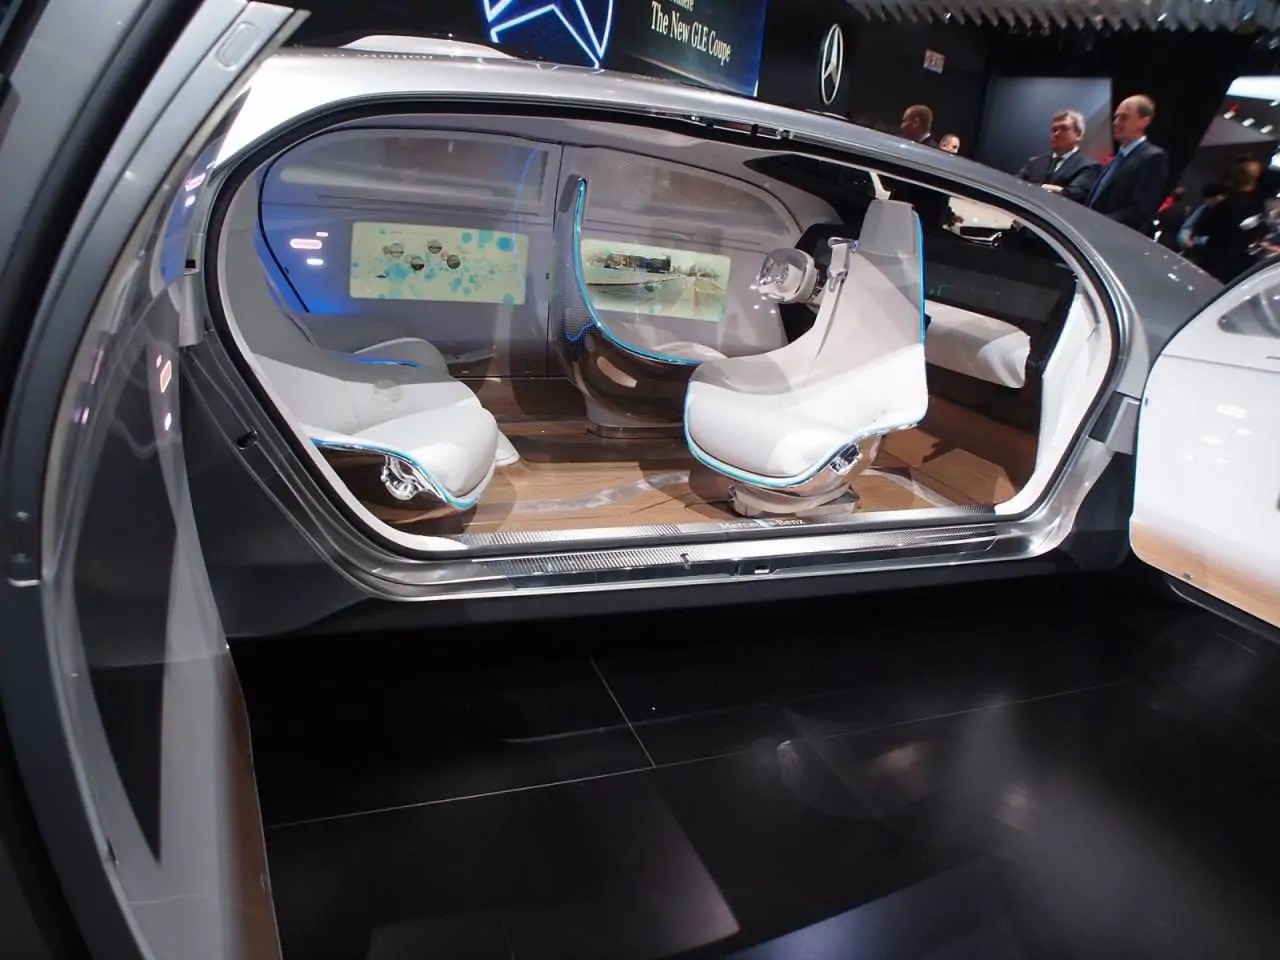 تقنيات متطورة تسمح للعملاء بالمشاركة في اختبارات السيارات عن بعد